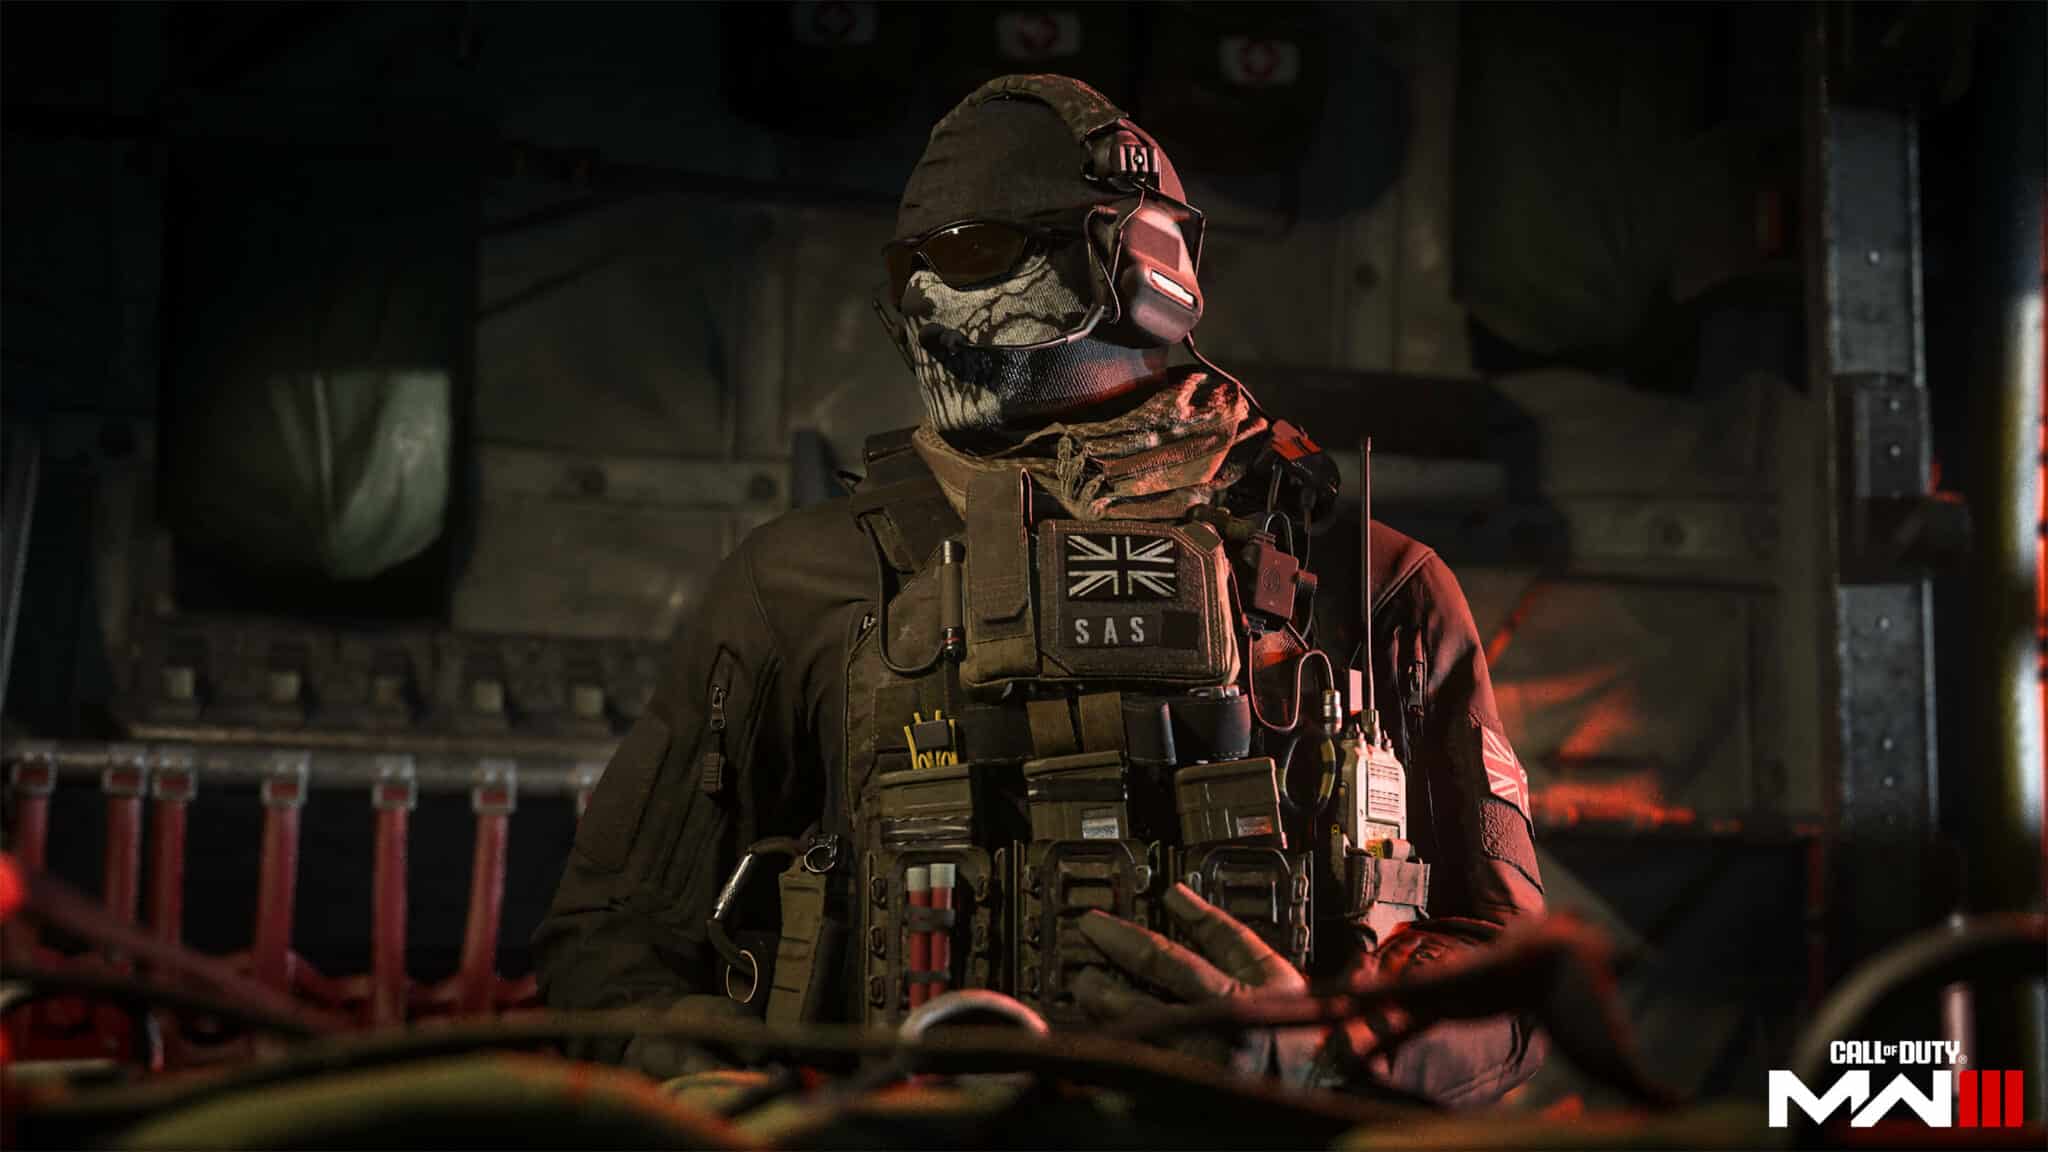 Critique du jeu Call of Duty: Modern Warfare 3 sur PS5